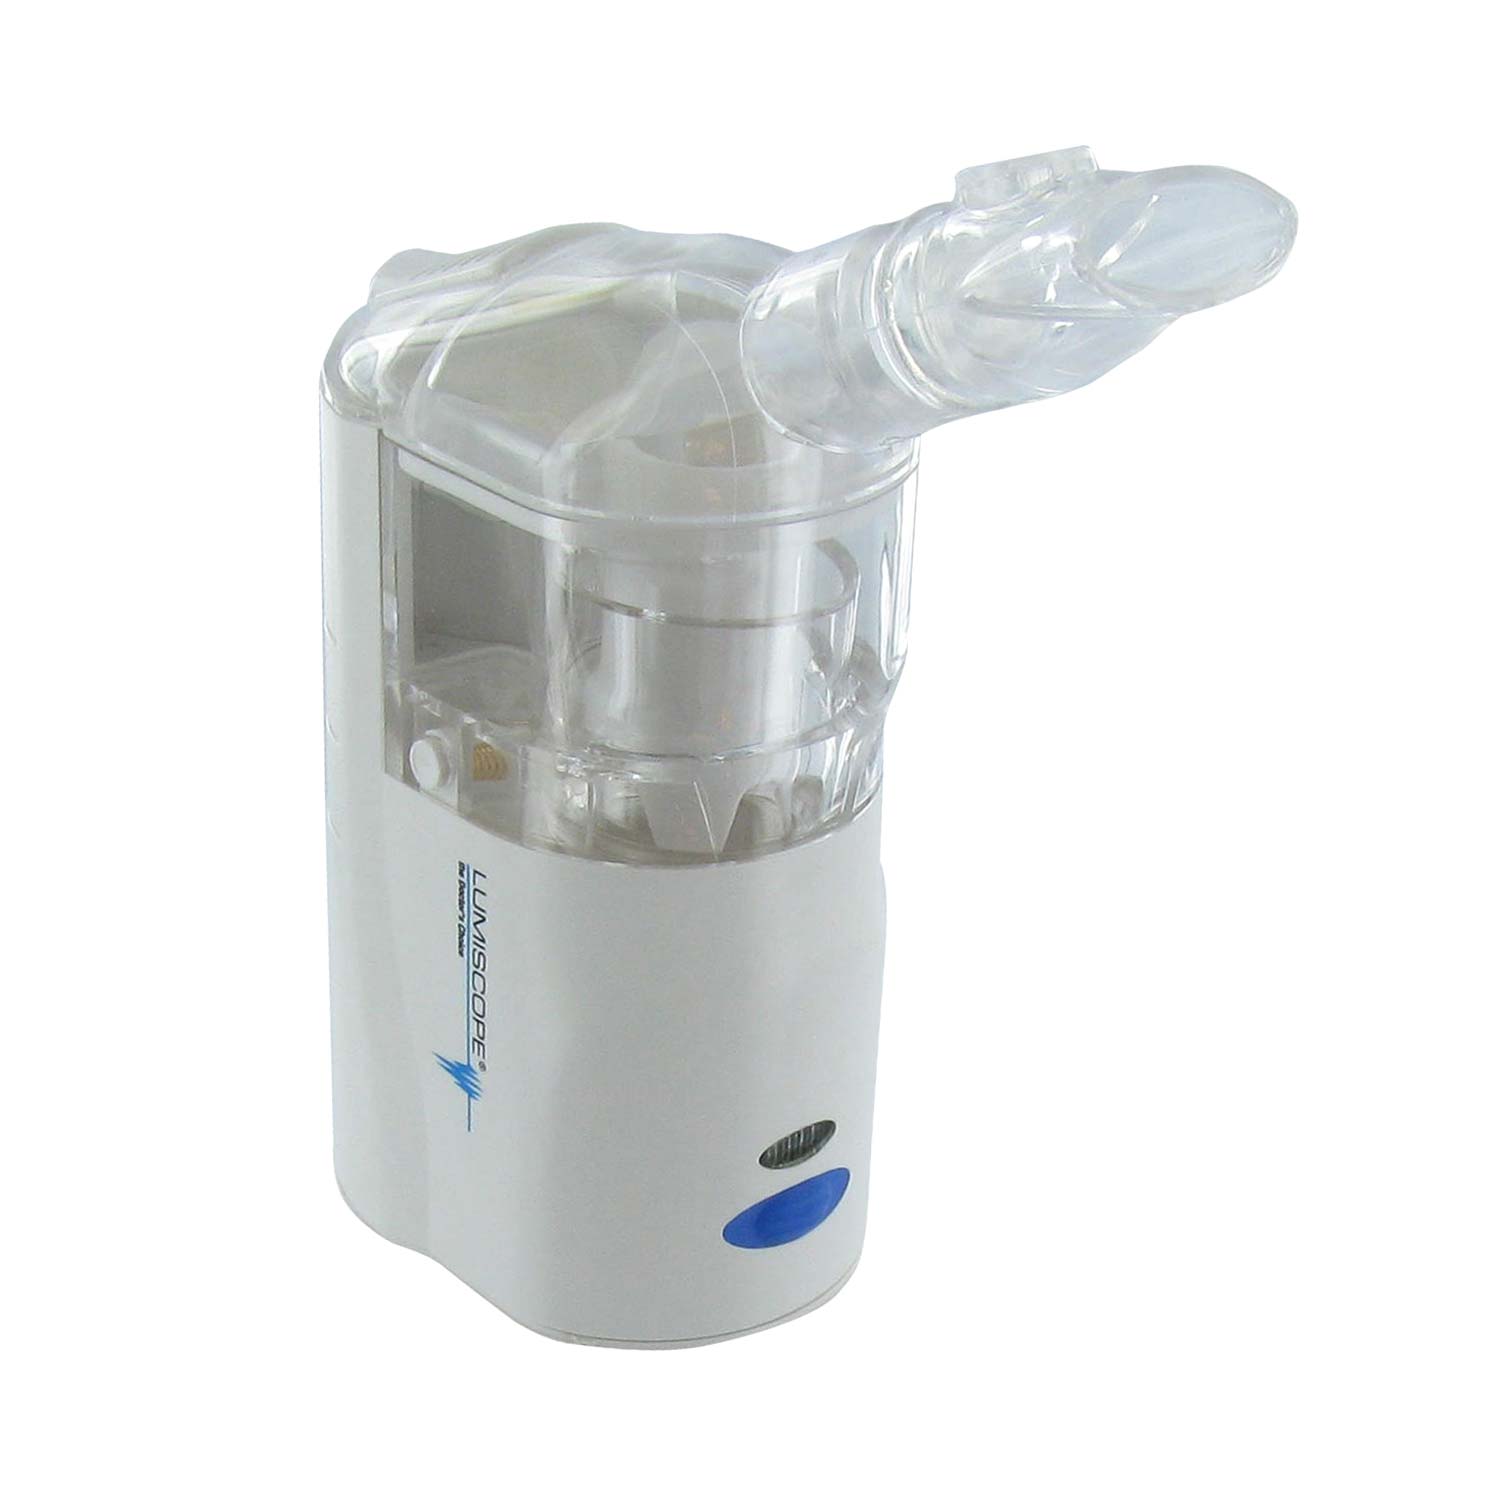 Lumiscope Portable Ultrasonic Nebulizer-Basic System